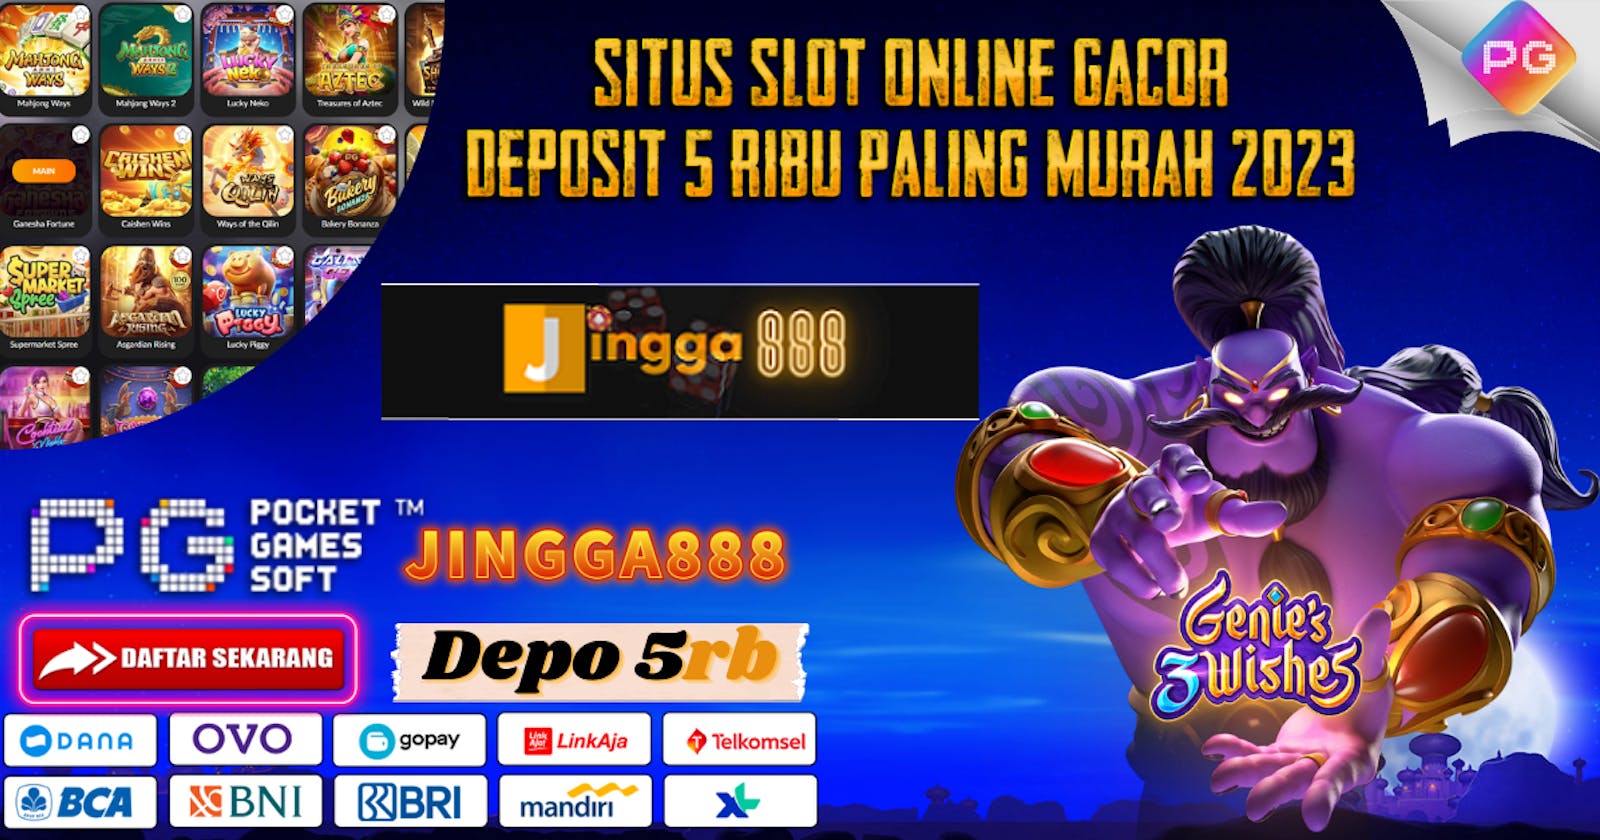 Situs Slot Gacor Deposit 5 Ribu Murah 2023